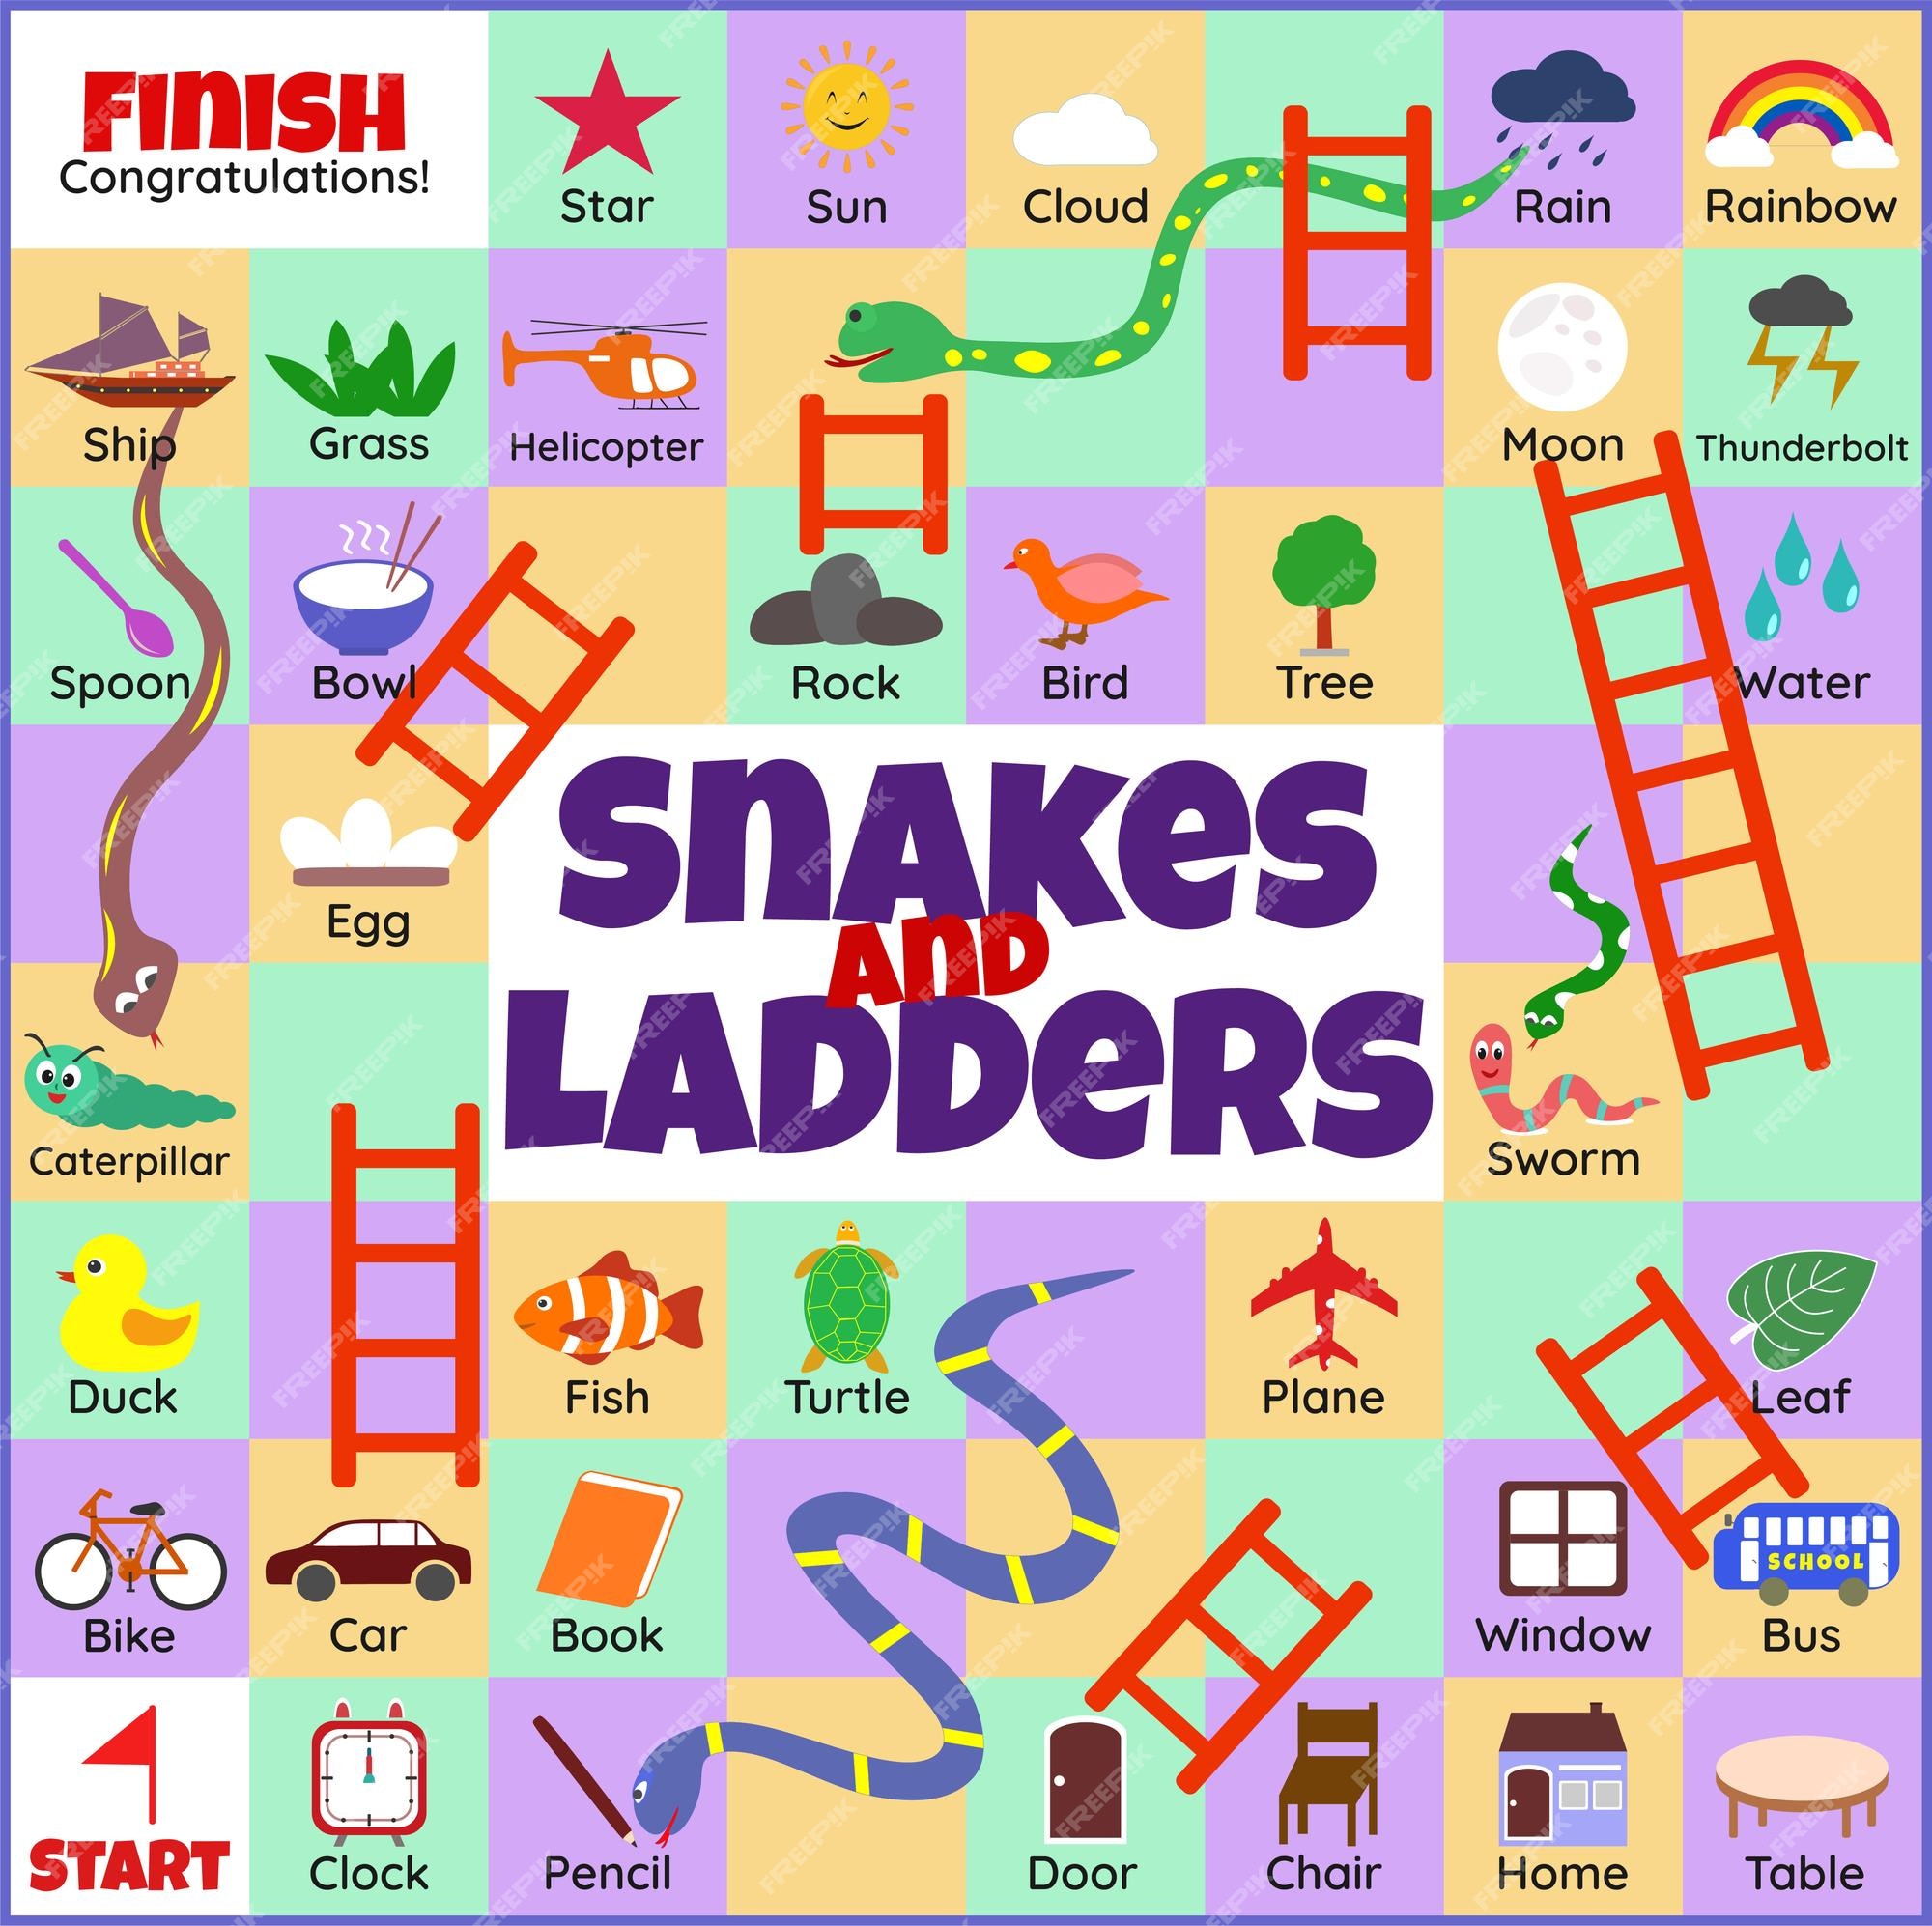 Snakes & Ladders - Jogos clássicos de tabuleiro 